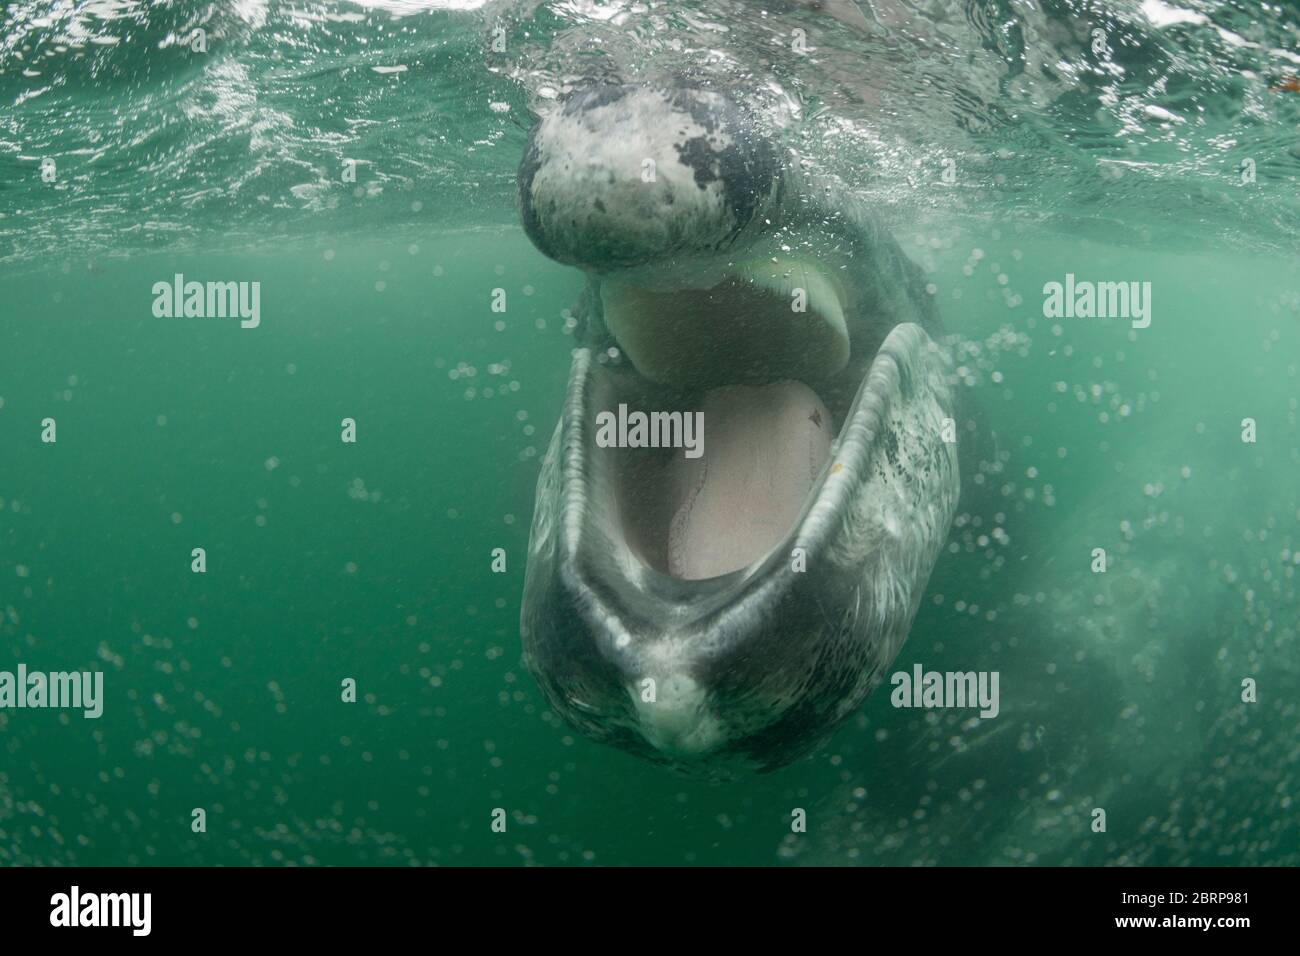 Le veau de baleine grise sympathique, Eschrichtius robustus, s'approche de la caméra avec la bouche ouverte, révélant la langue sur le sol de la mâchoire inférieure et la frange de la balancelle Banque D'Images